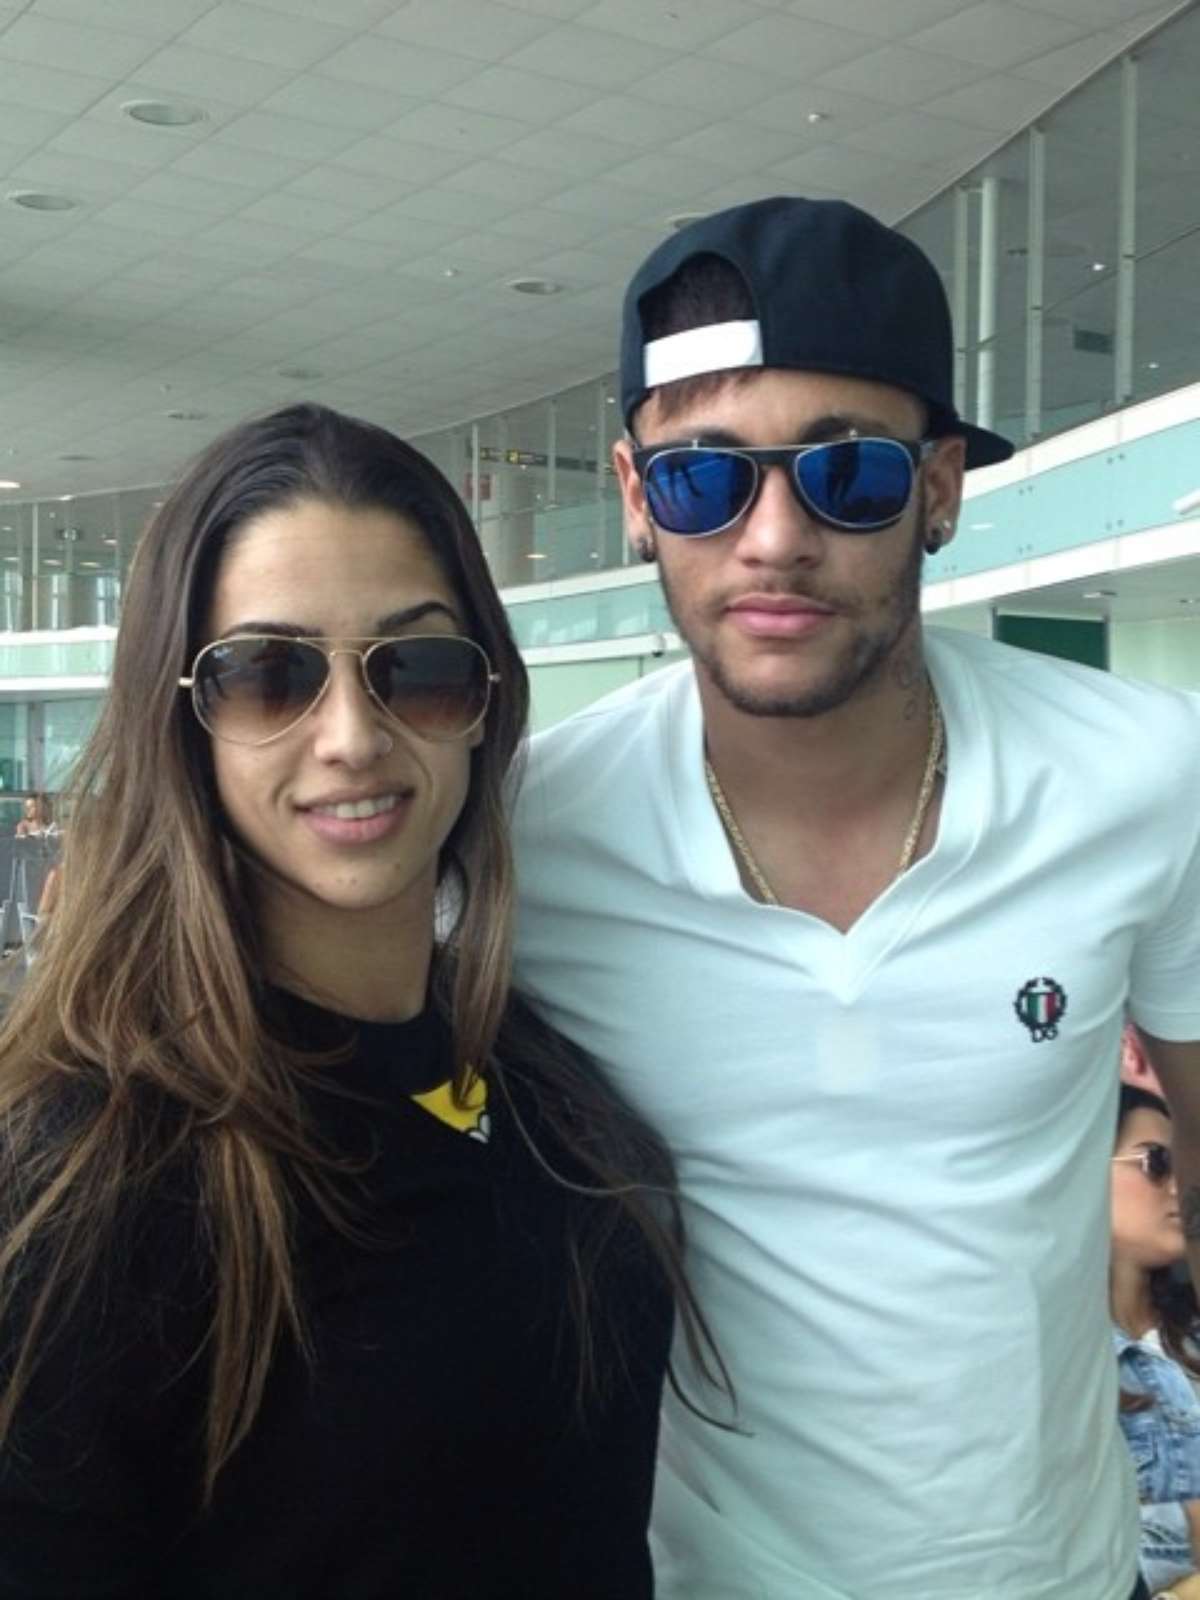 Foto: Um fã clube de Bruna Marquezine e Neymar postou uma foto com os  rostos dos artista e com a palabra 'Acabou', em cima da montagem. Bruna  Marquezine curtiu e os fãs